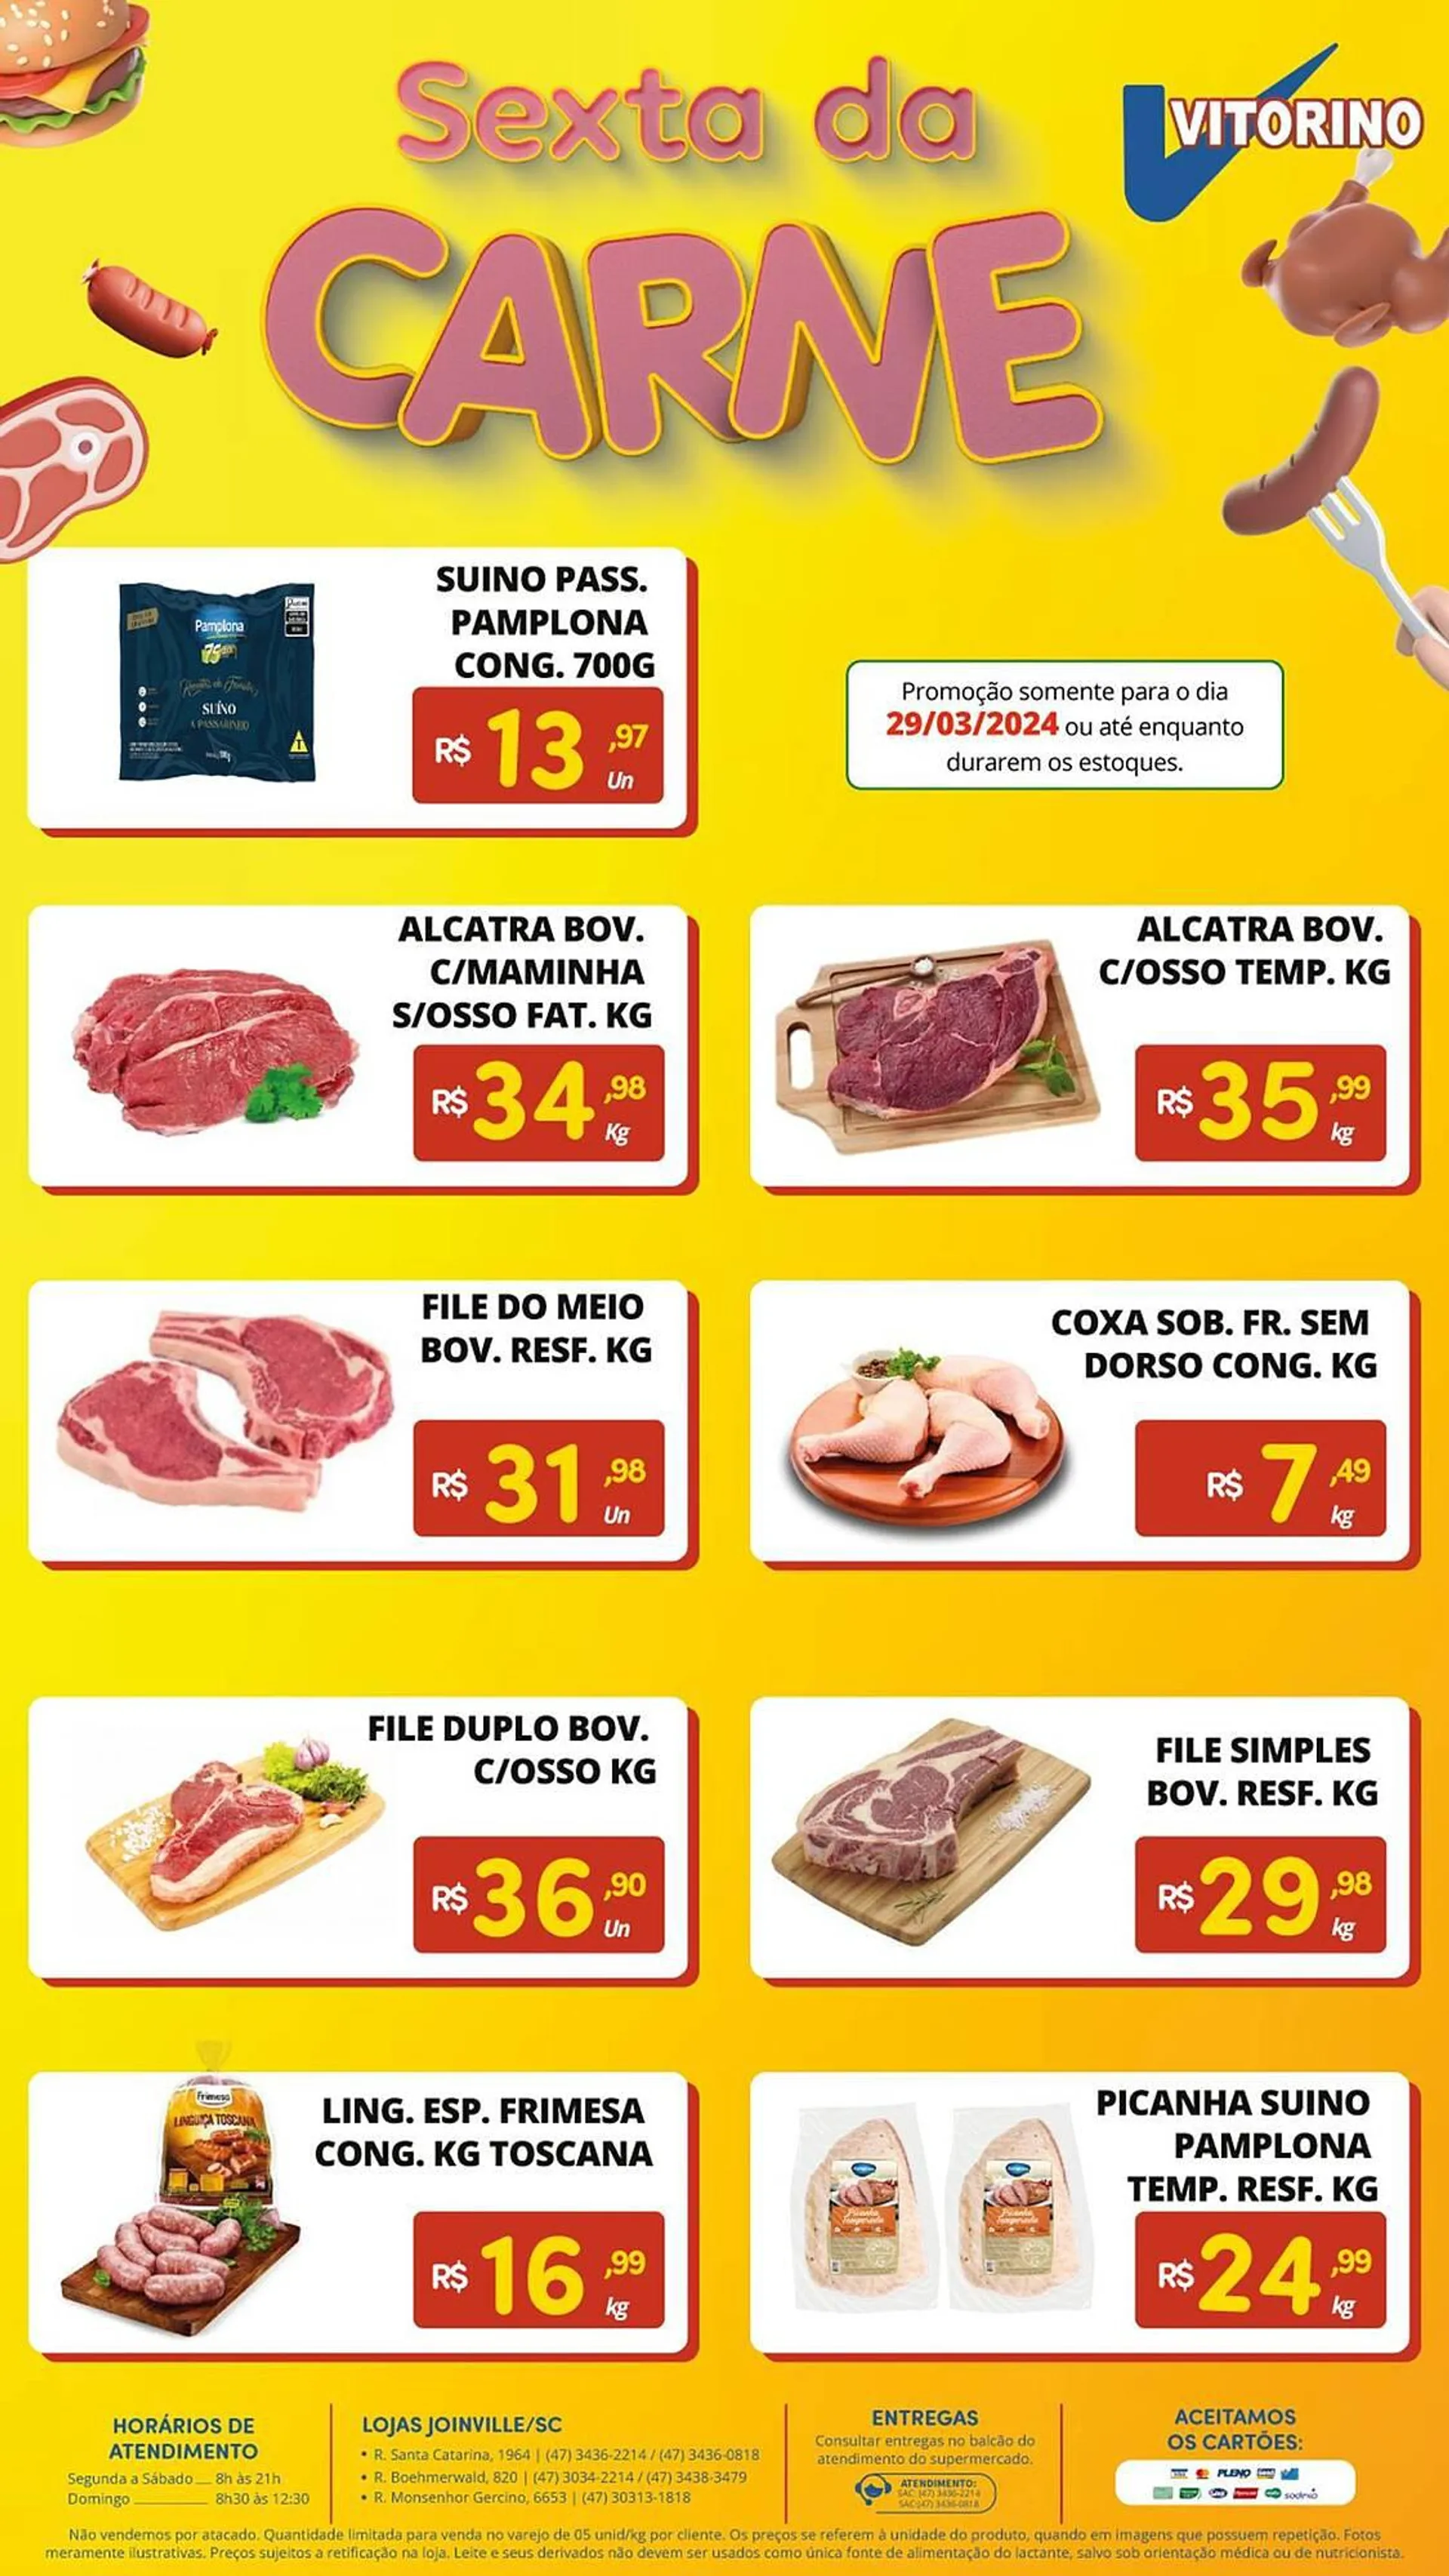 Encarte de Catálogo Supermercado Vitorino 3 de abril até 29 de abril 2024 - Pagina 1